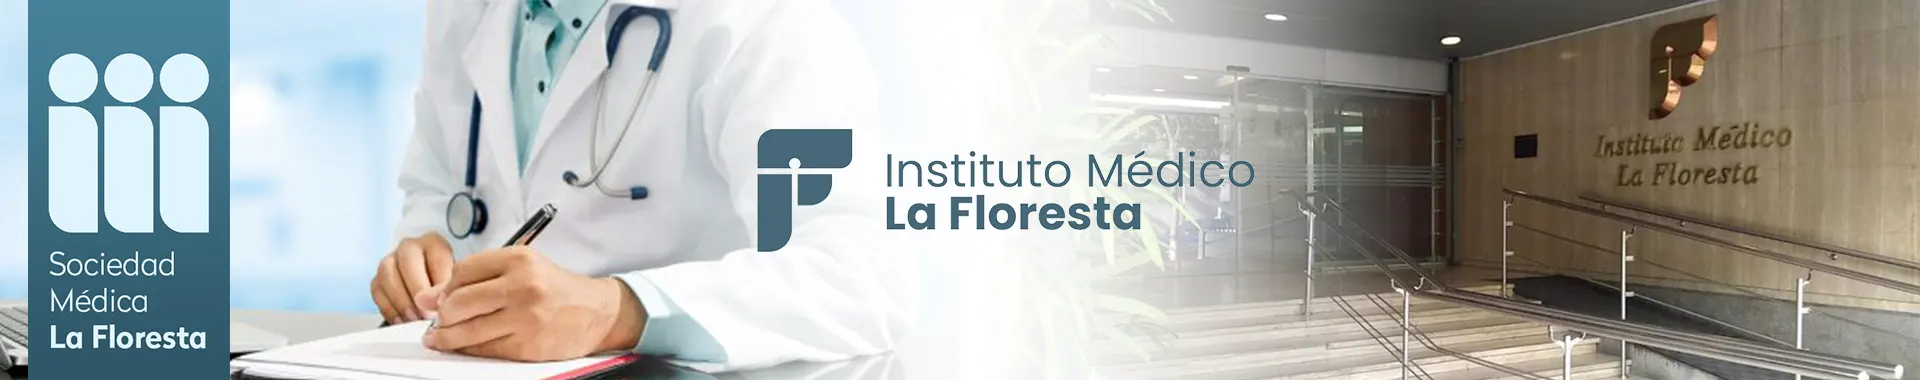 Imagen 1 del perfil de Sociedad Médica del Instituto Médico la Floresta